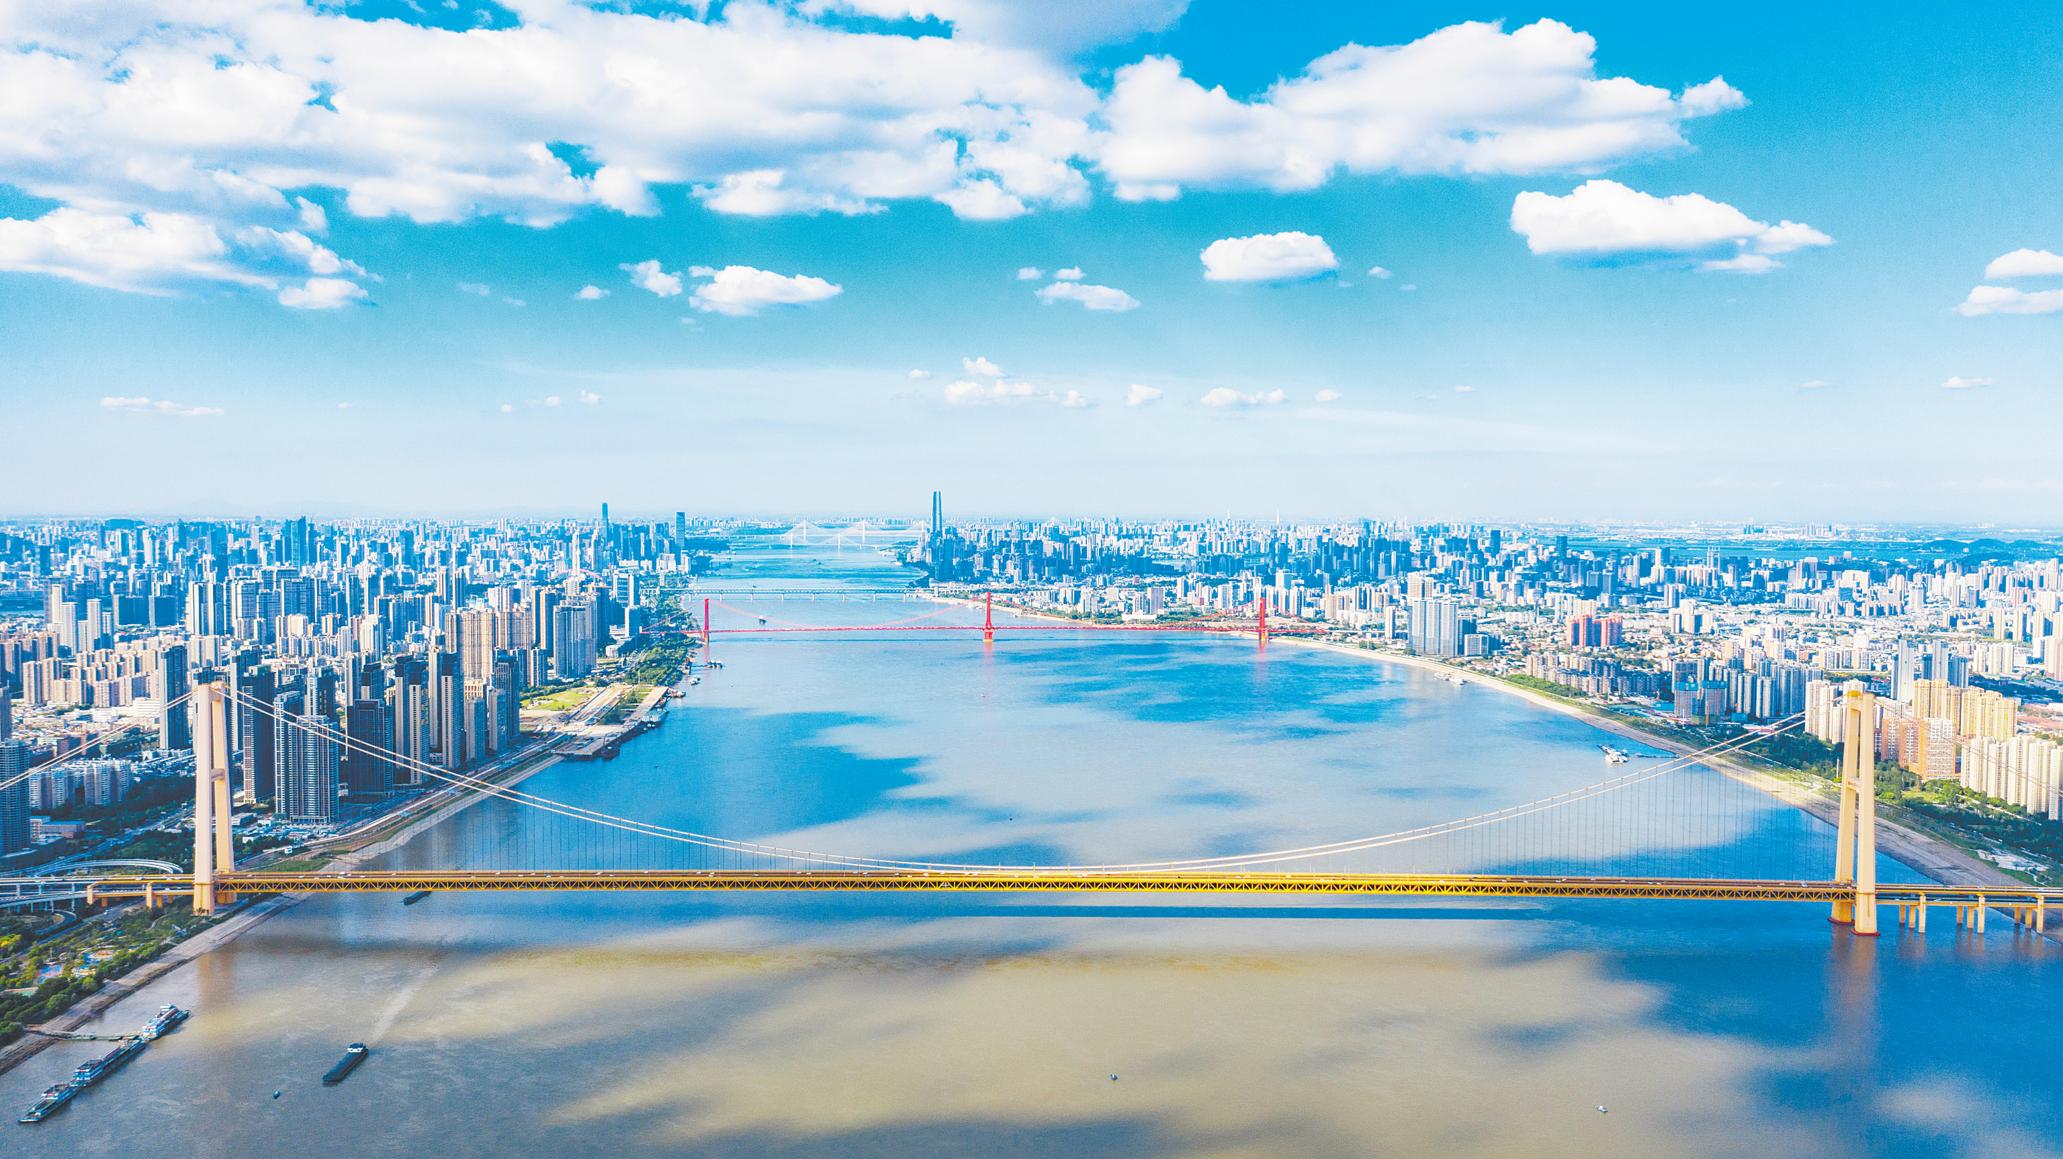 图为2022年8月5日,鸟瞰长江武汉段,7座跨江大桥尽收眼底